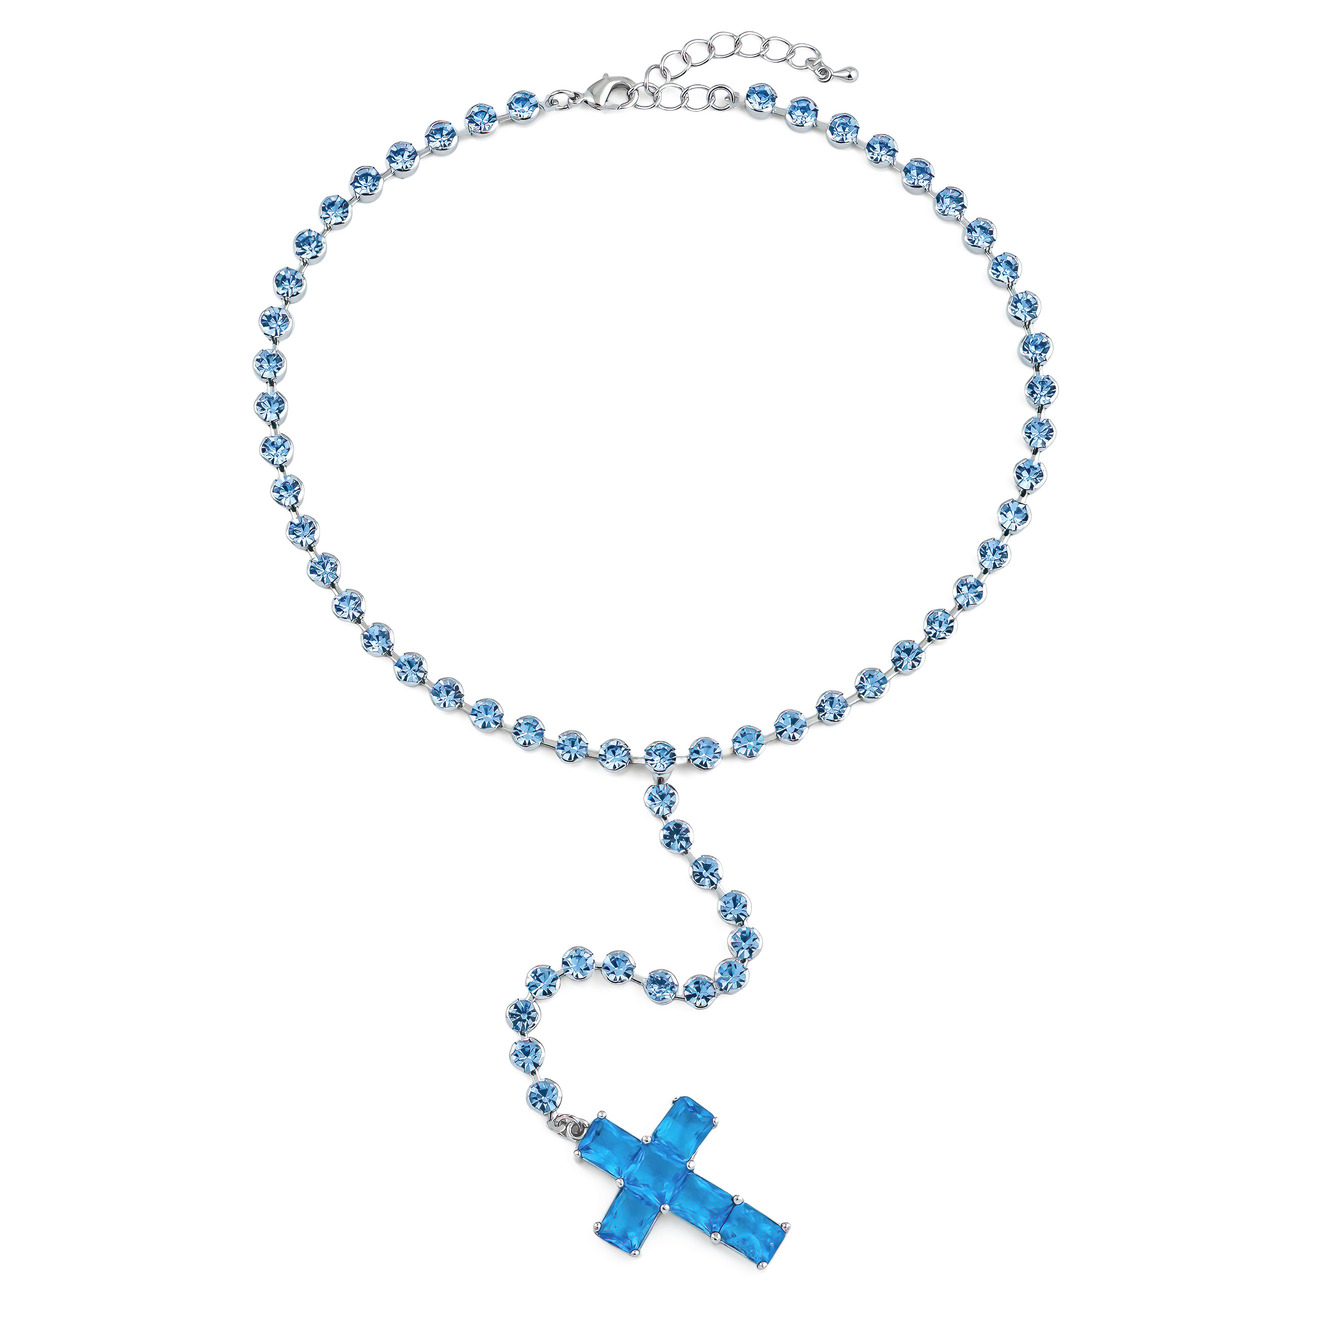 Herald Percy Серебристое колье-галстук с голубыми кристаллами в виде креста herald percy двойное серебристое колье с крестами